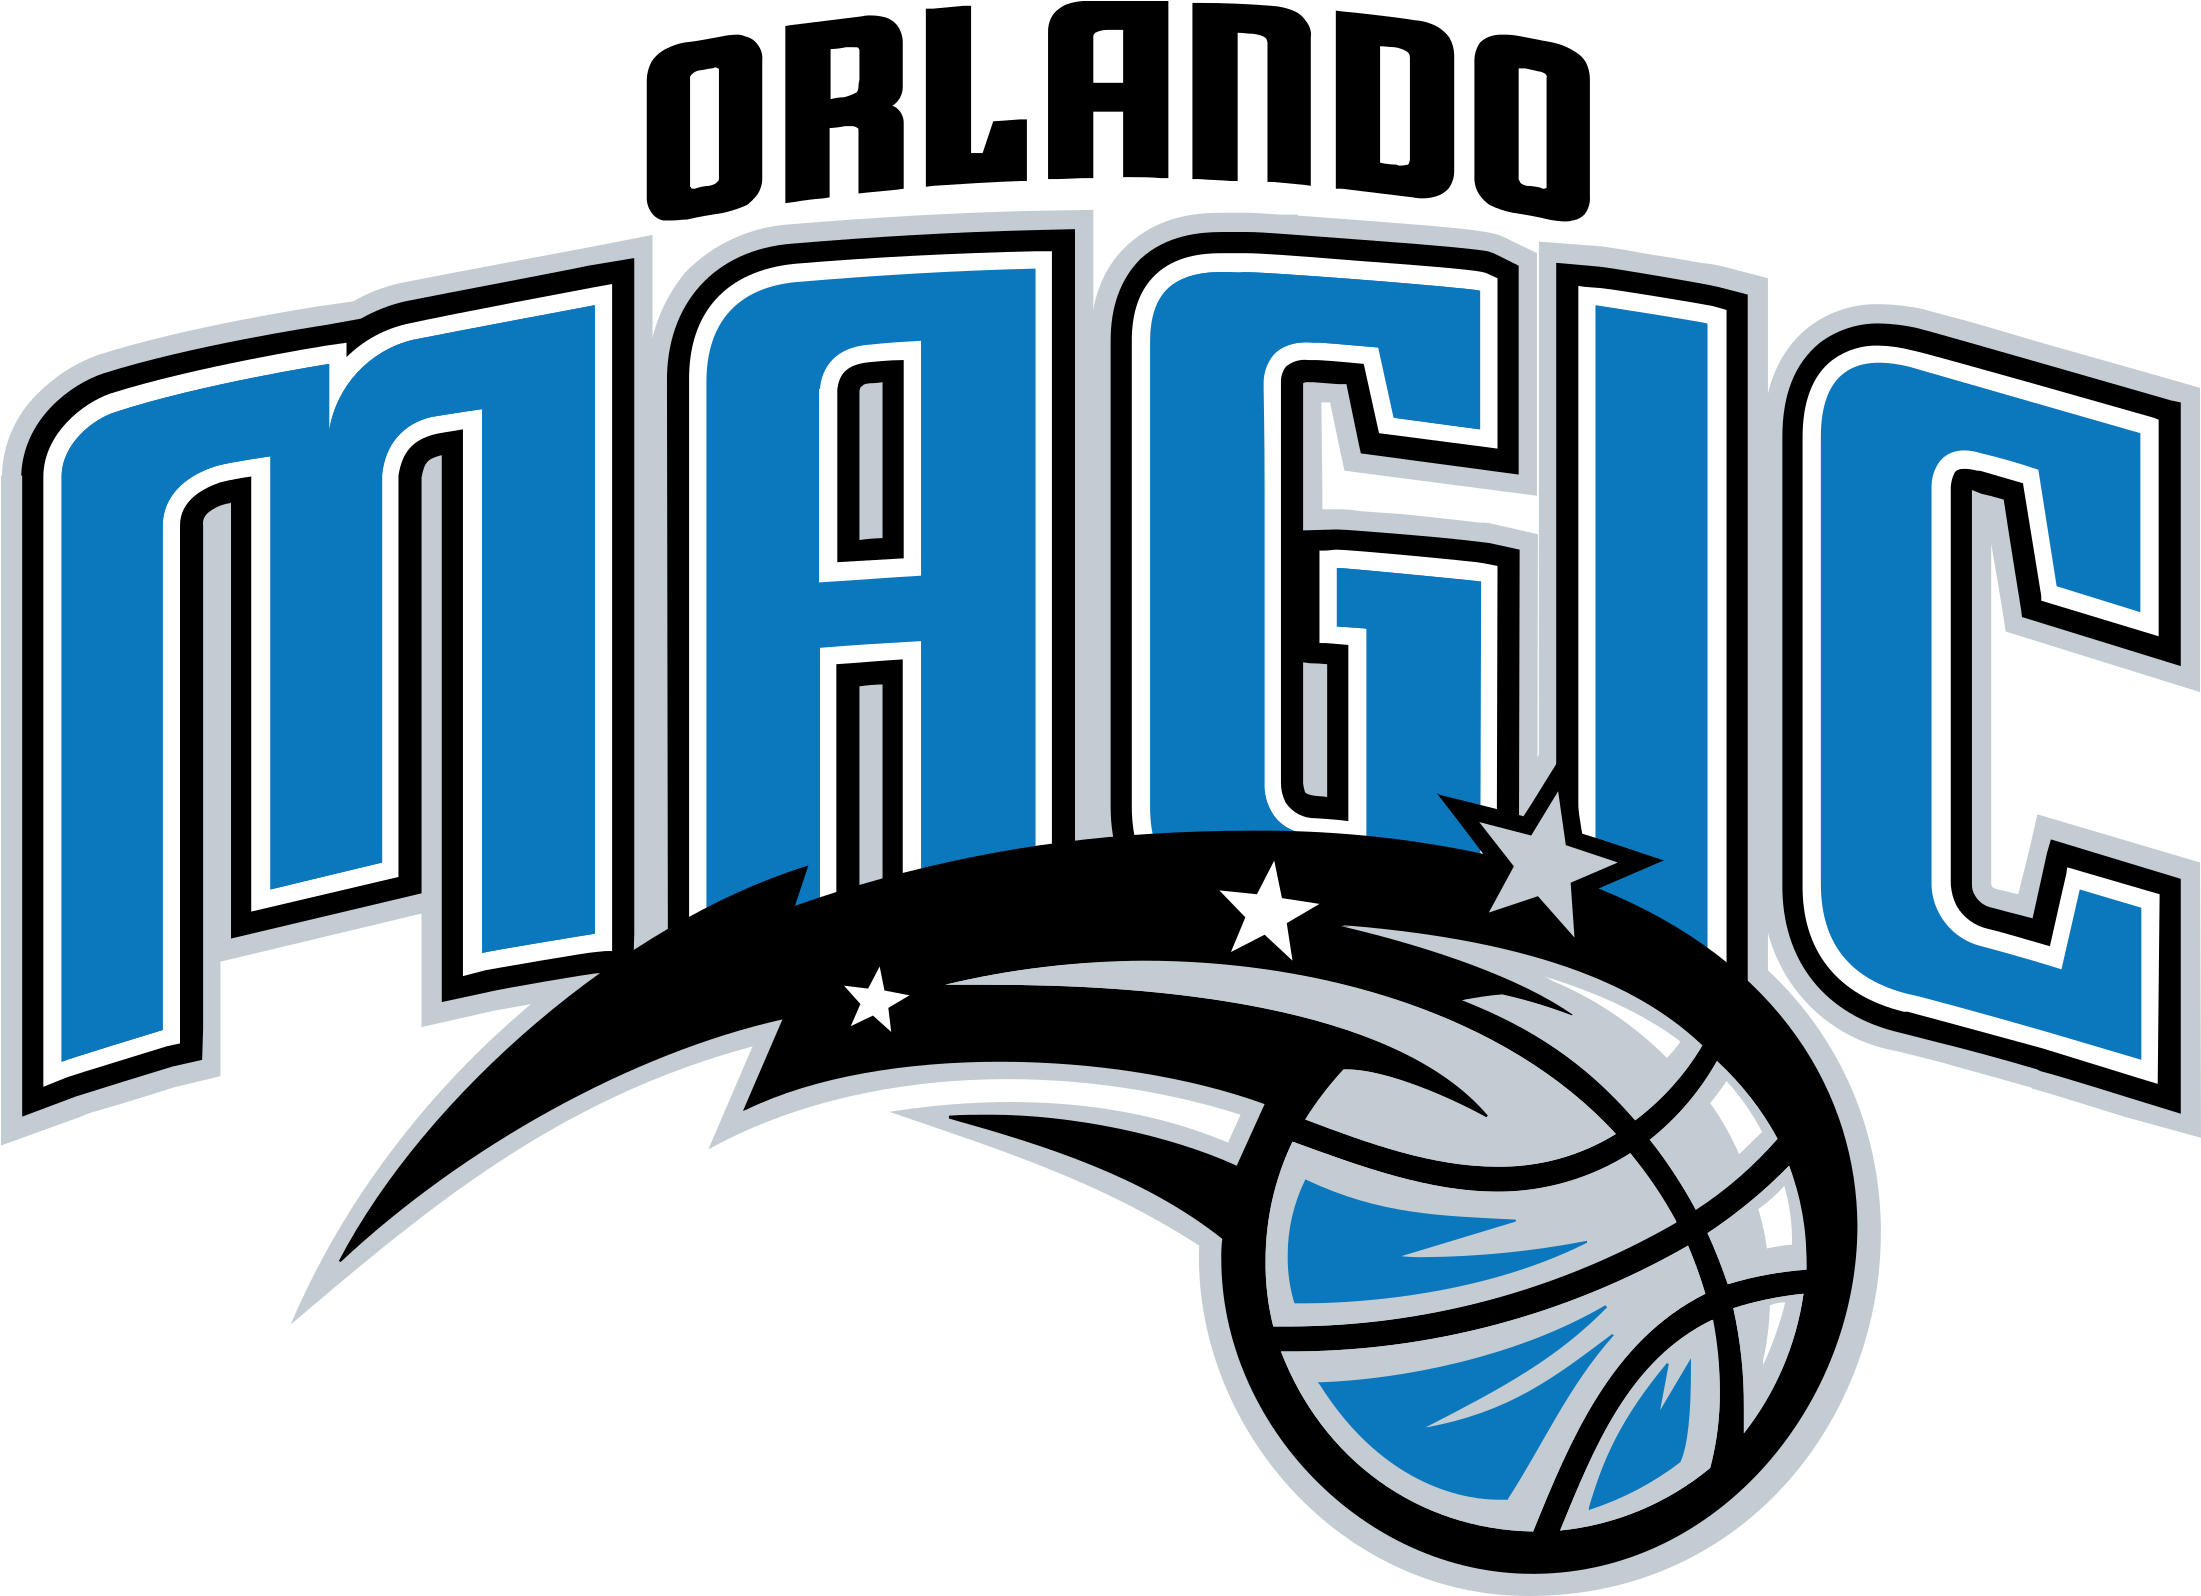 Orlando Magic Logo Transparent - Orlando Magic Logo 2015 (2400x1595)